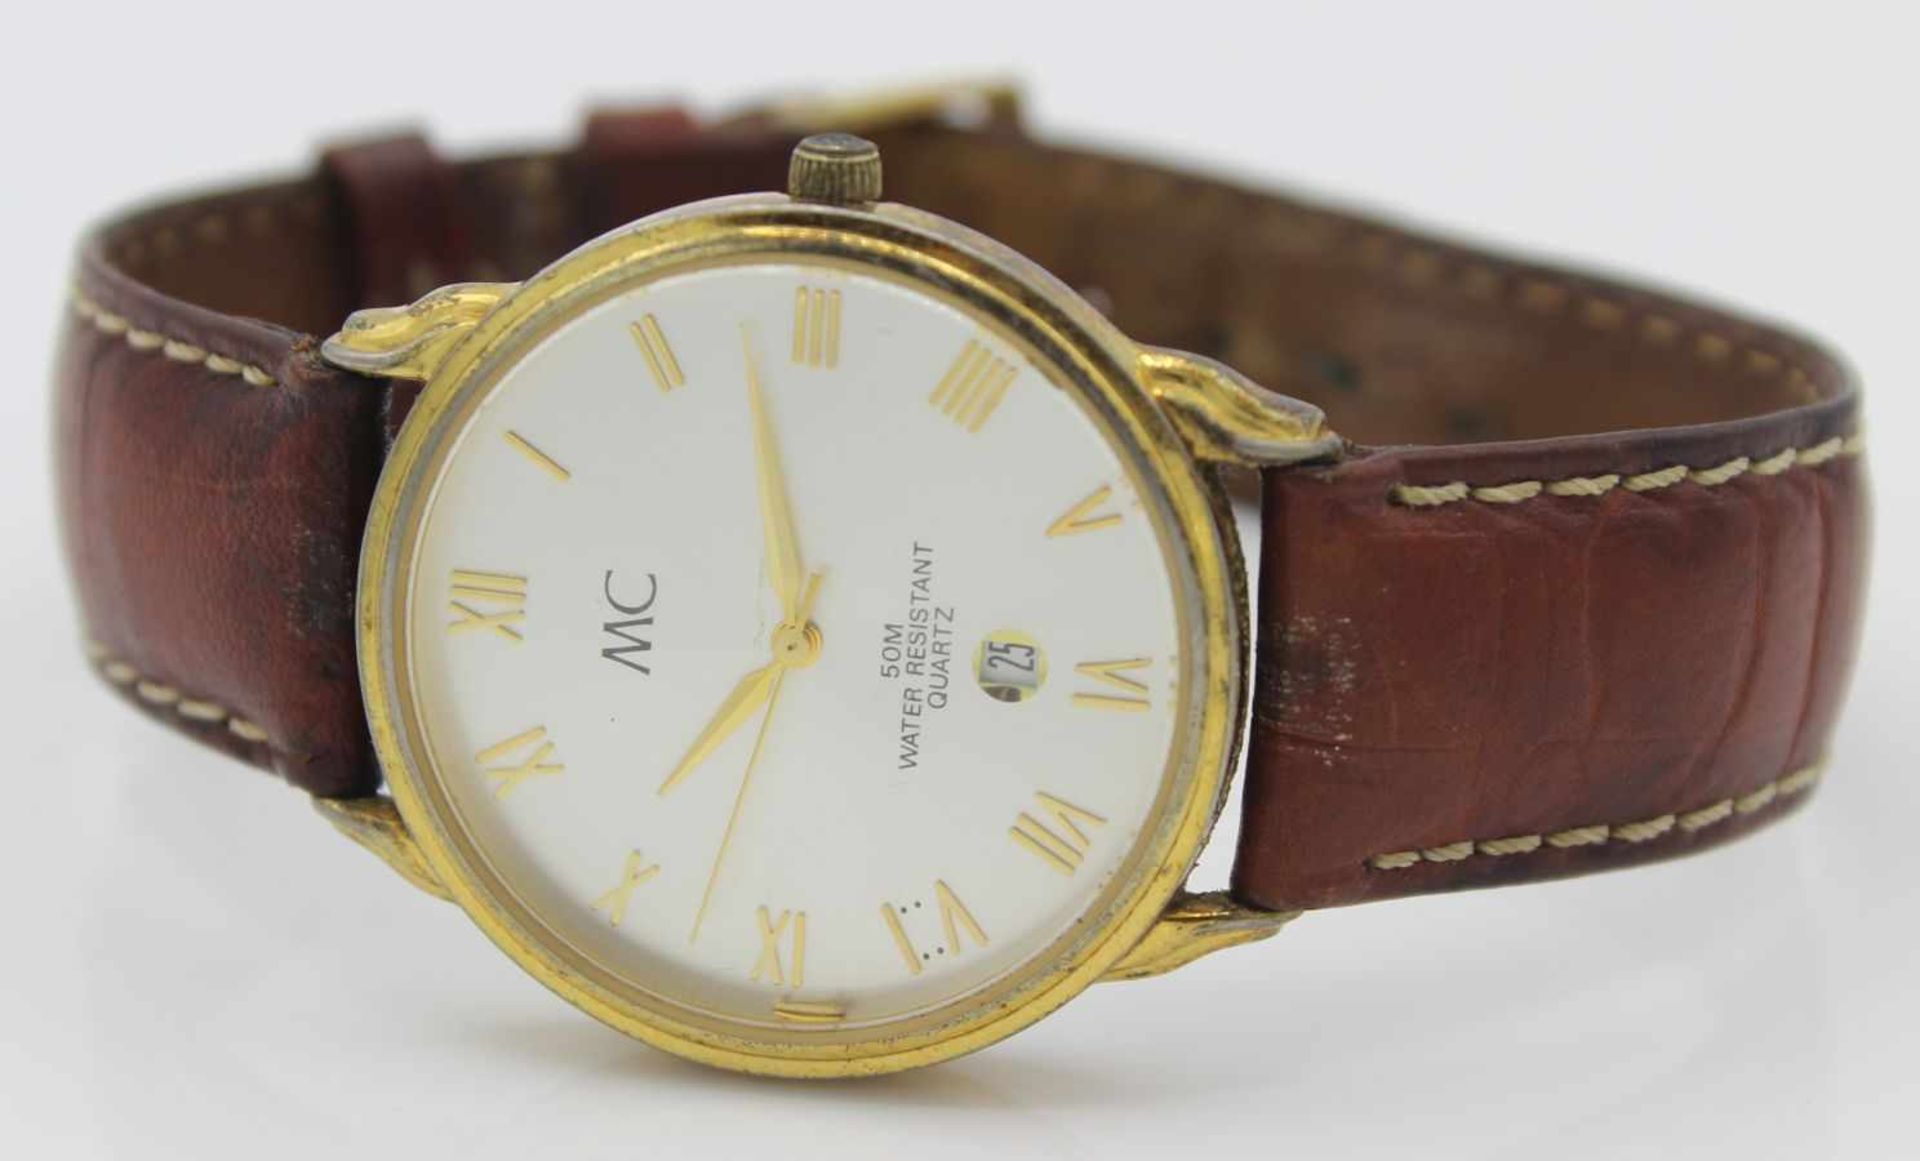 Armbanduhr - Marke MC silberfarbenes Zifferblatt mit vergoldeten Zeigern und Sekunde, vergoldete